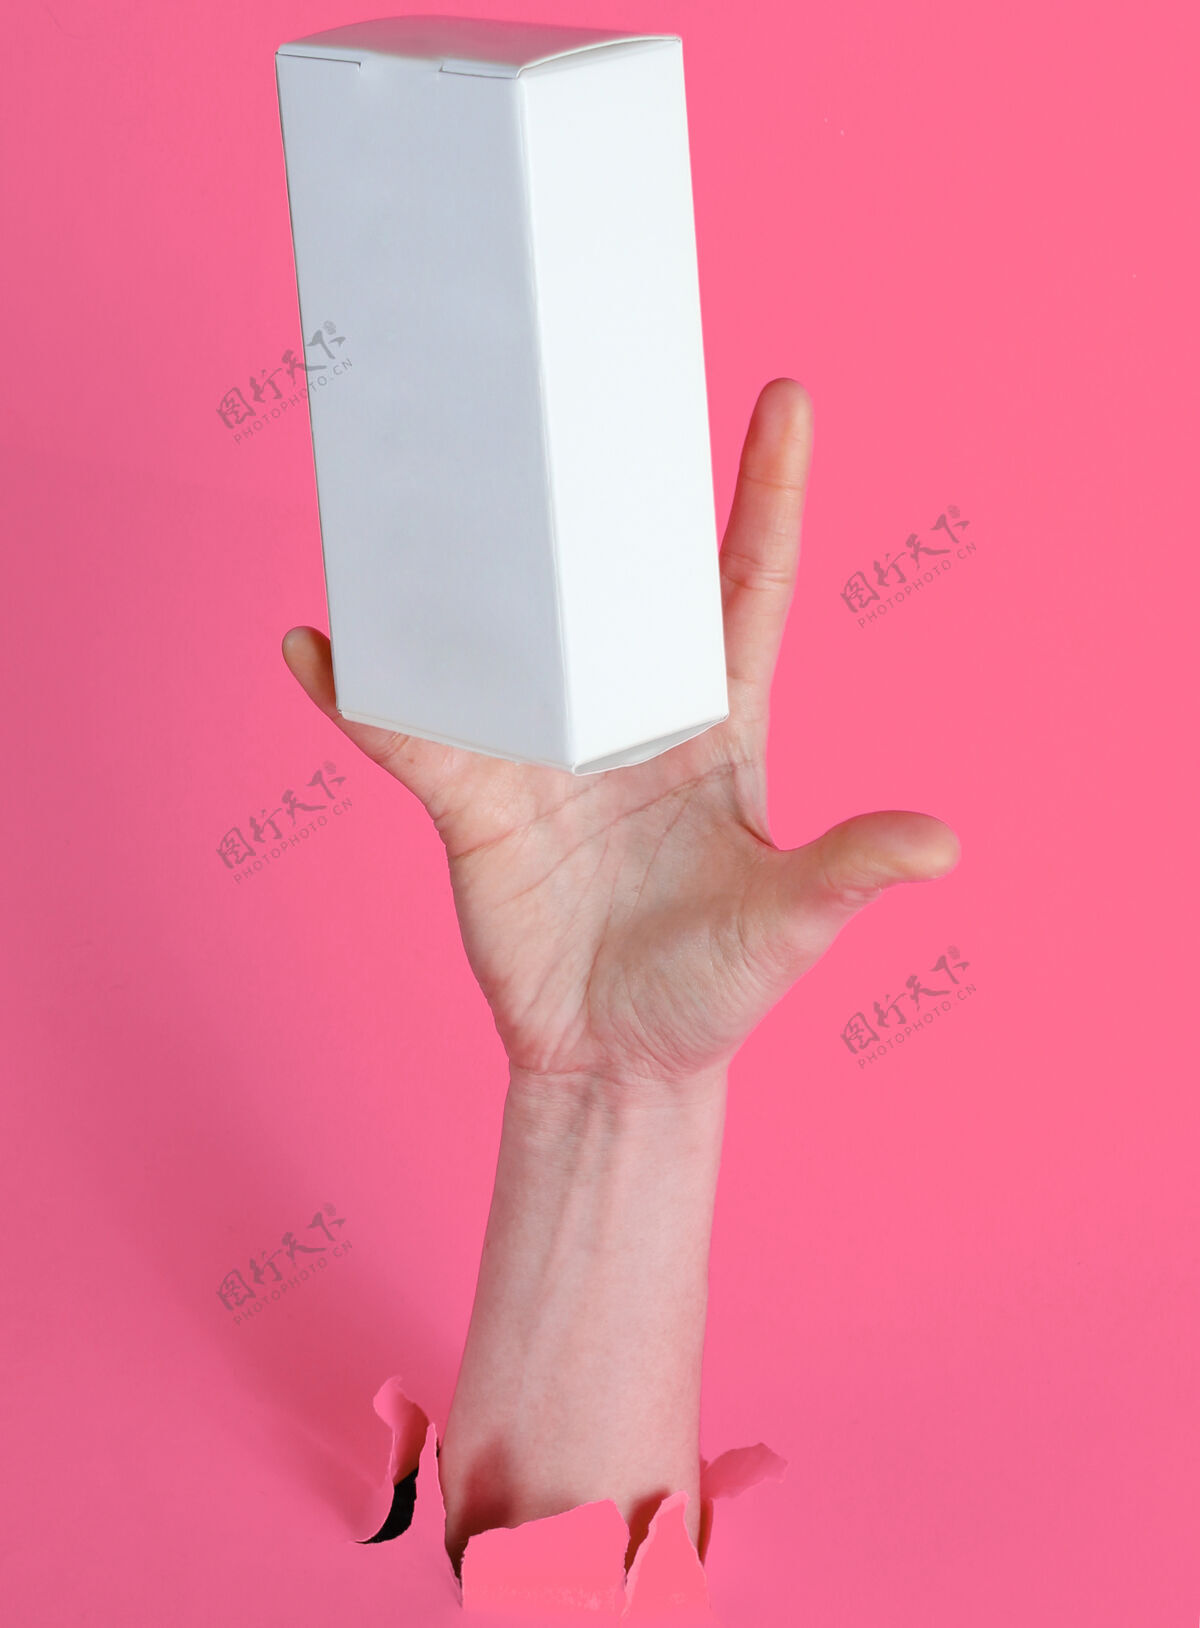 人母手抓住白色盒子穿过撕破的粉红色纸简约创意理念礼品运输撕破